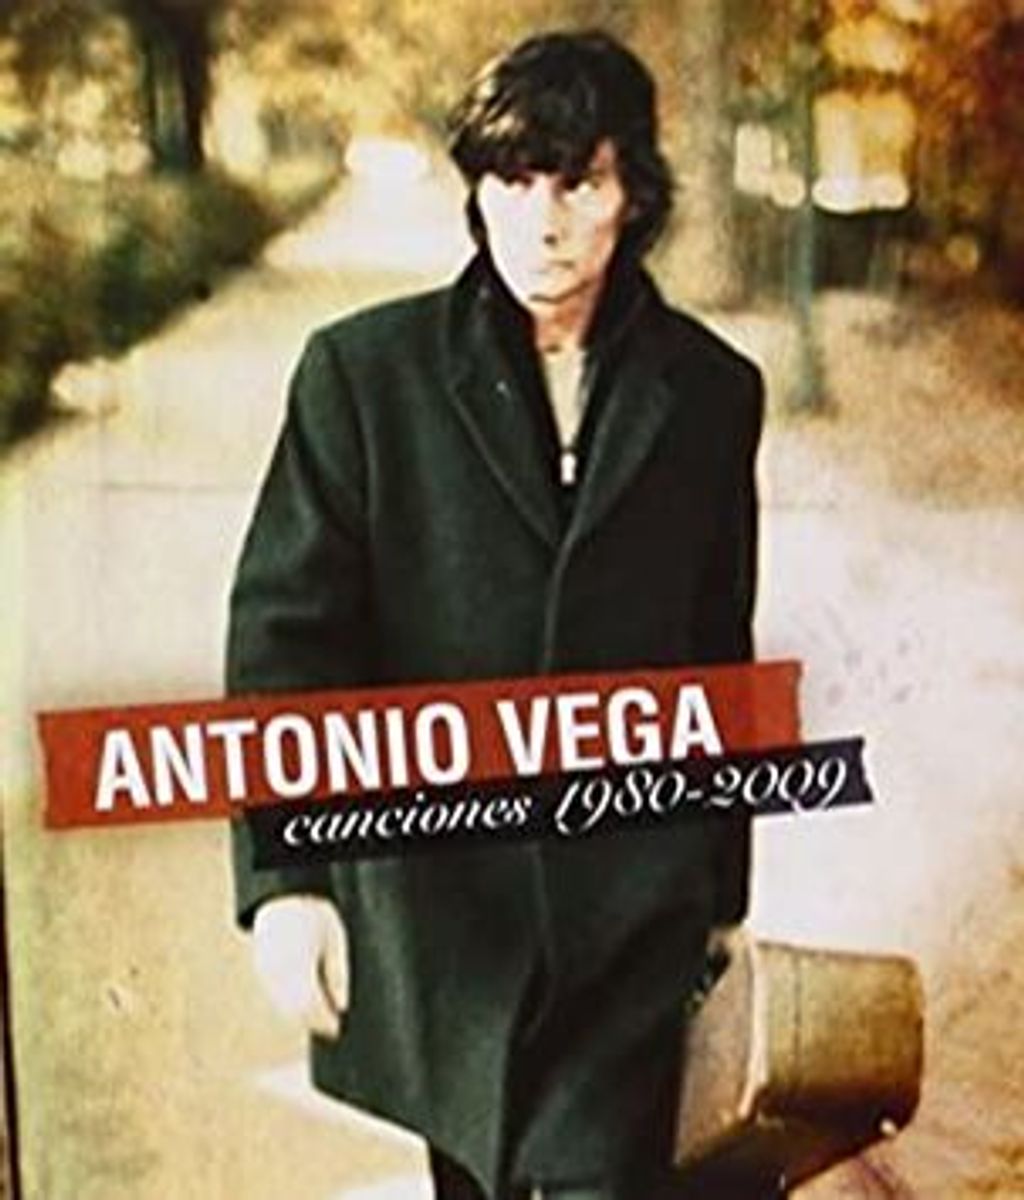 Fotografía de la portada del disco de Antonio Vega.